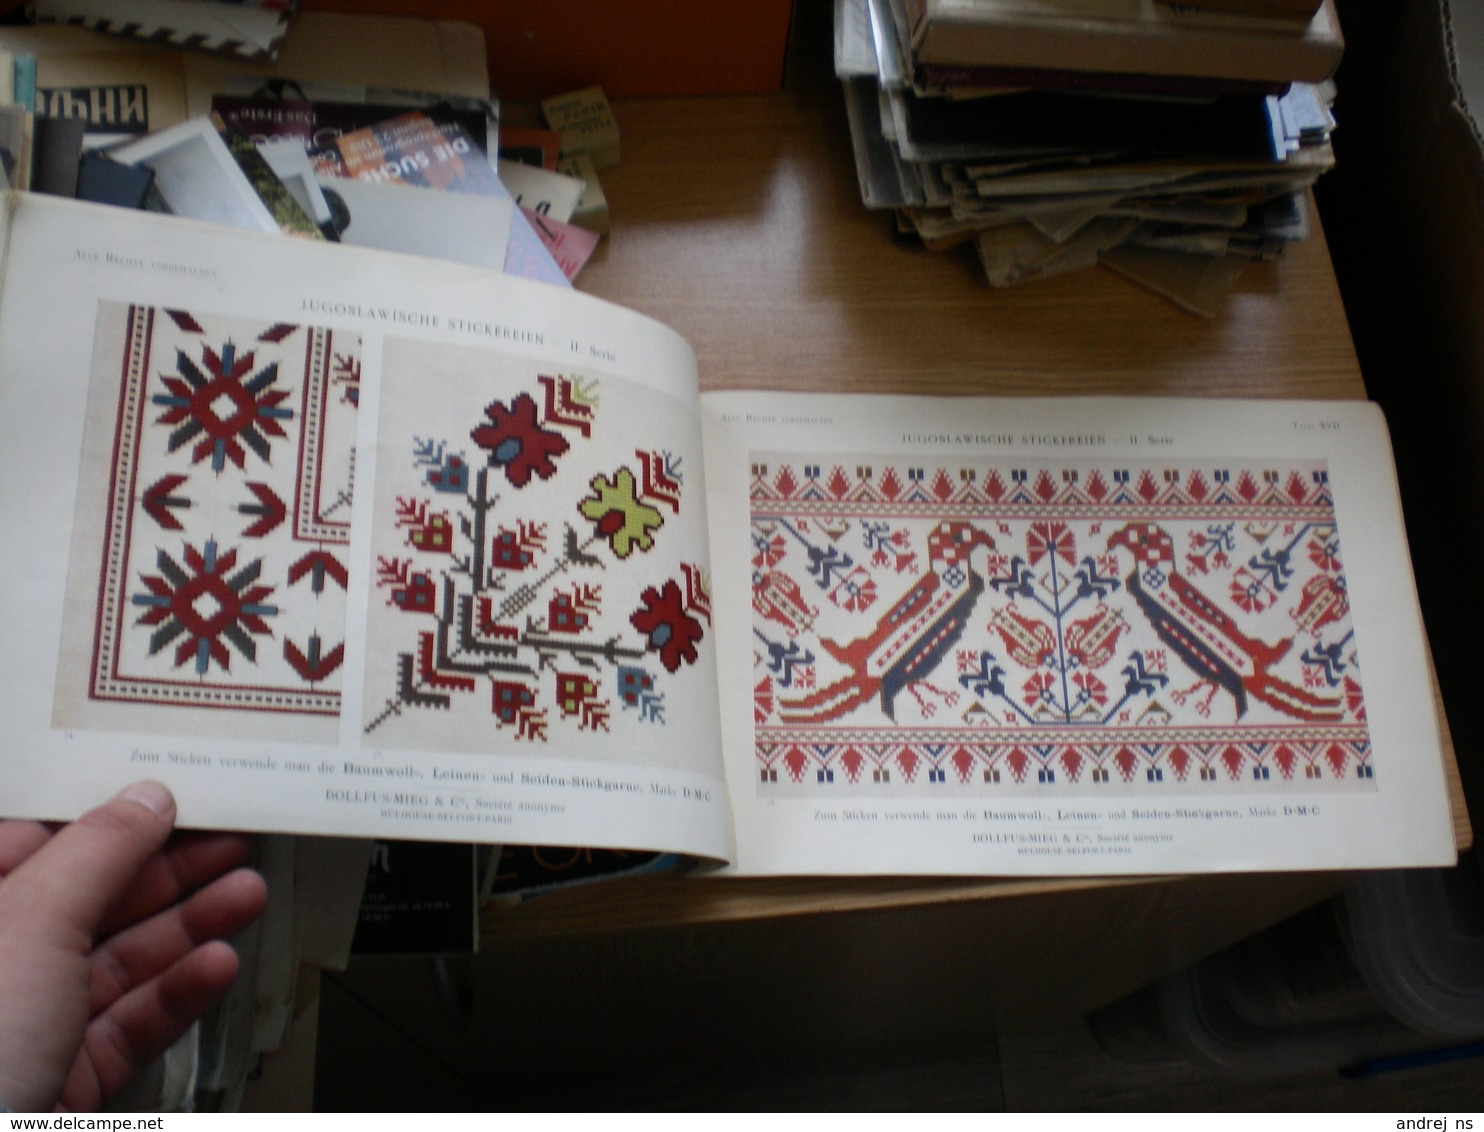 Bibliothek D M C Jugoslawische Stickereien I II Serie color 2 books